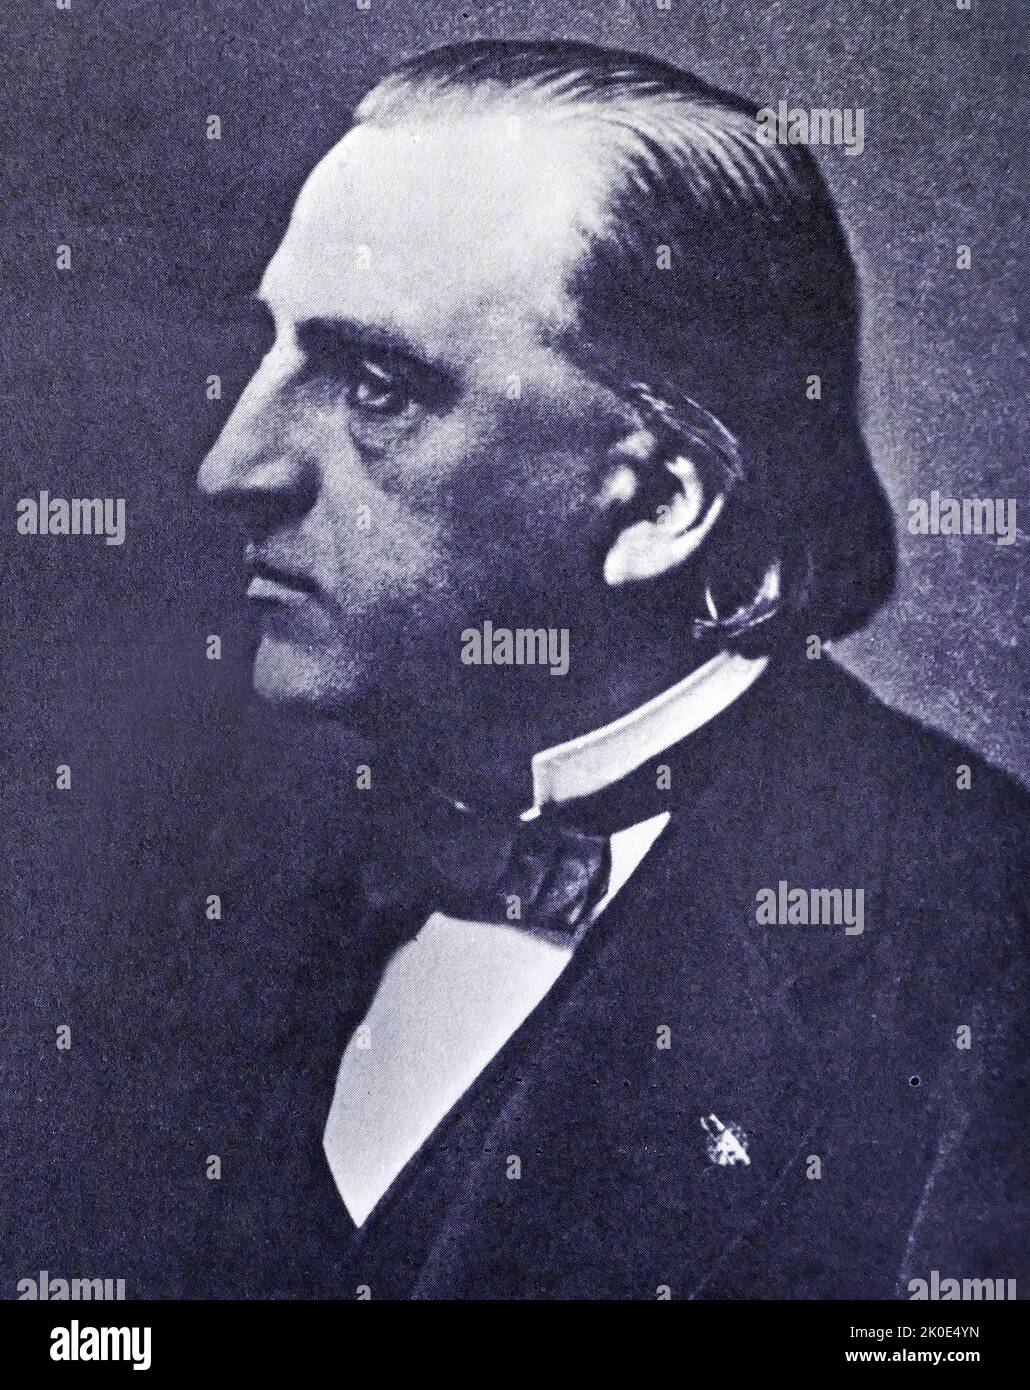 Jean-Martin Charcot (1825 - 1893) französischer Neurologe und Professor für anatomische Pathologie. Er ist heute vor allem für seine Arbeit über Hypnose und Hysterie bekannt. Charcot ist bekannt als 'der Gründer der modernen Neurologie'. Stockfoto